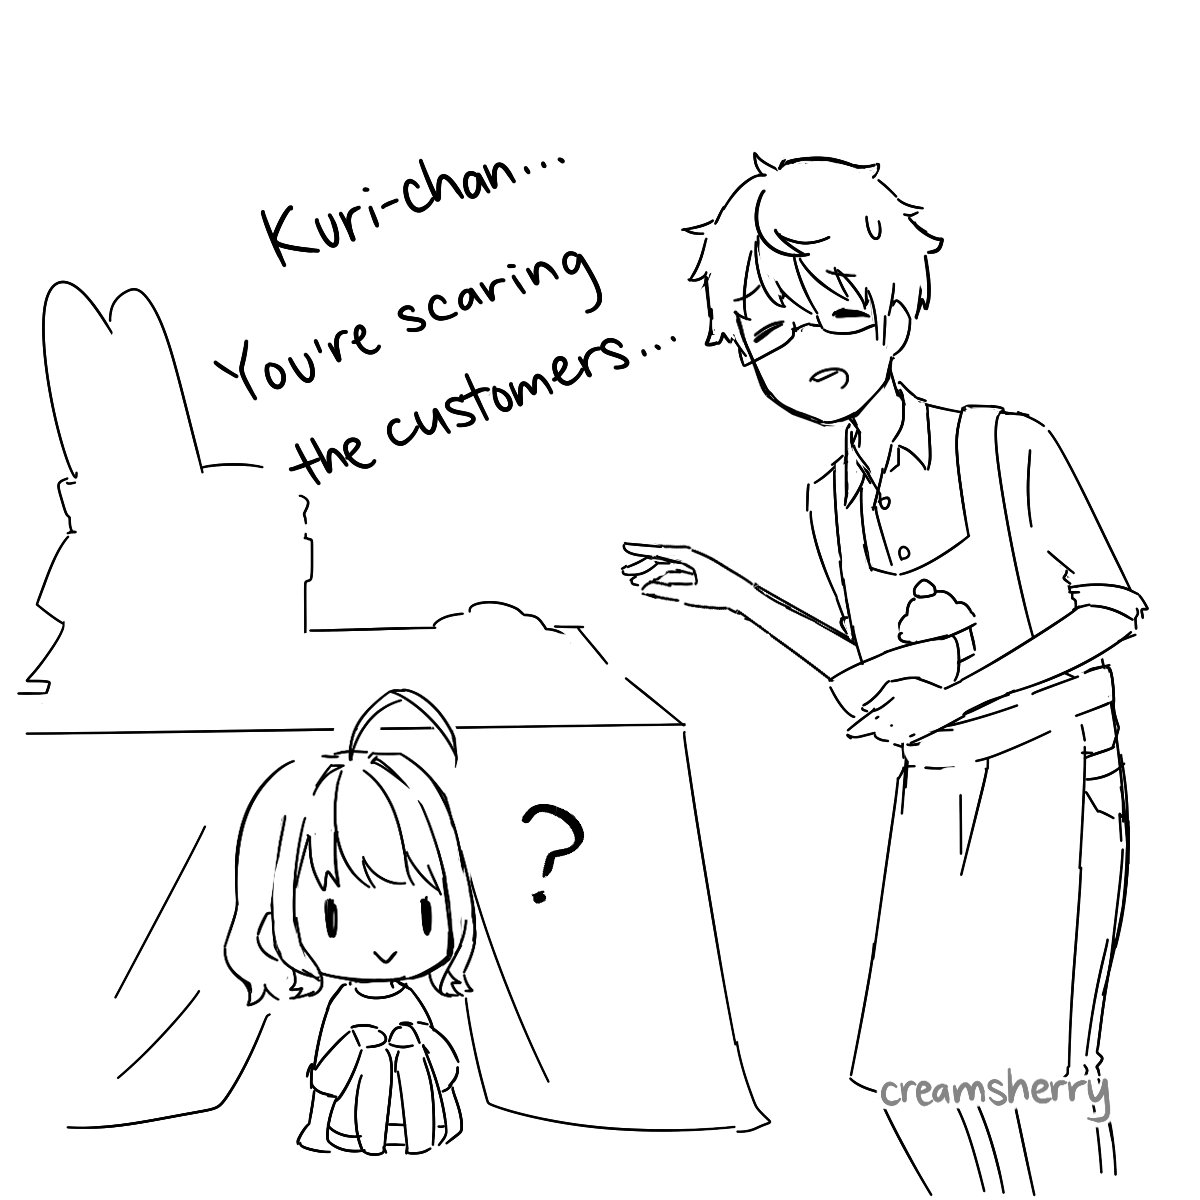 接客方法が間違っているかも...w クリームちゃんの漫画描いてみようかな(*'ω`*)
Cream-chan trying to be friendly to the bakery customers LOL ?
(Second sketch is Cream-chan's dad! He calls her Kuri-chan because her real name is Kurisu ?) 